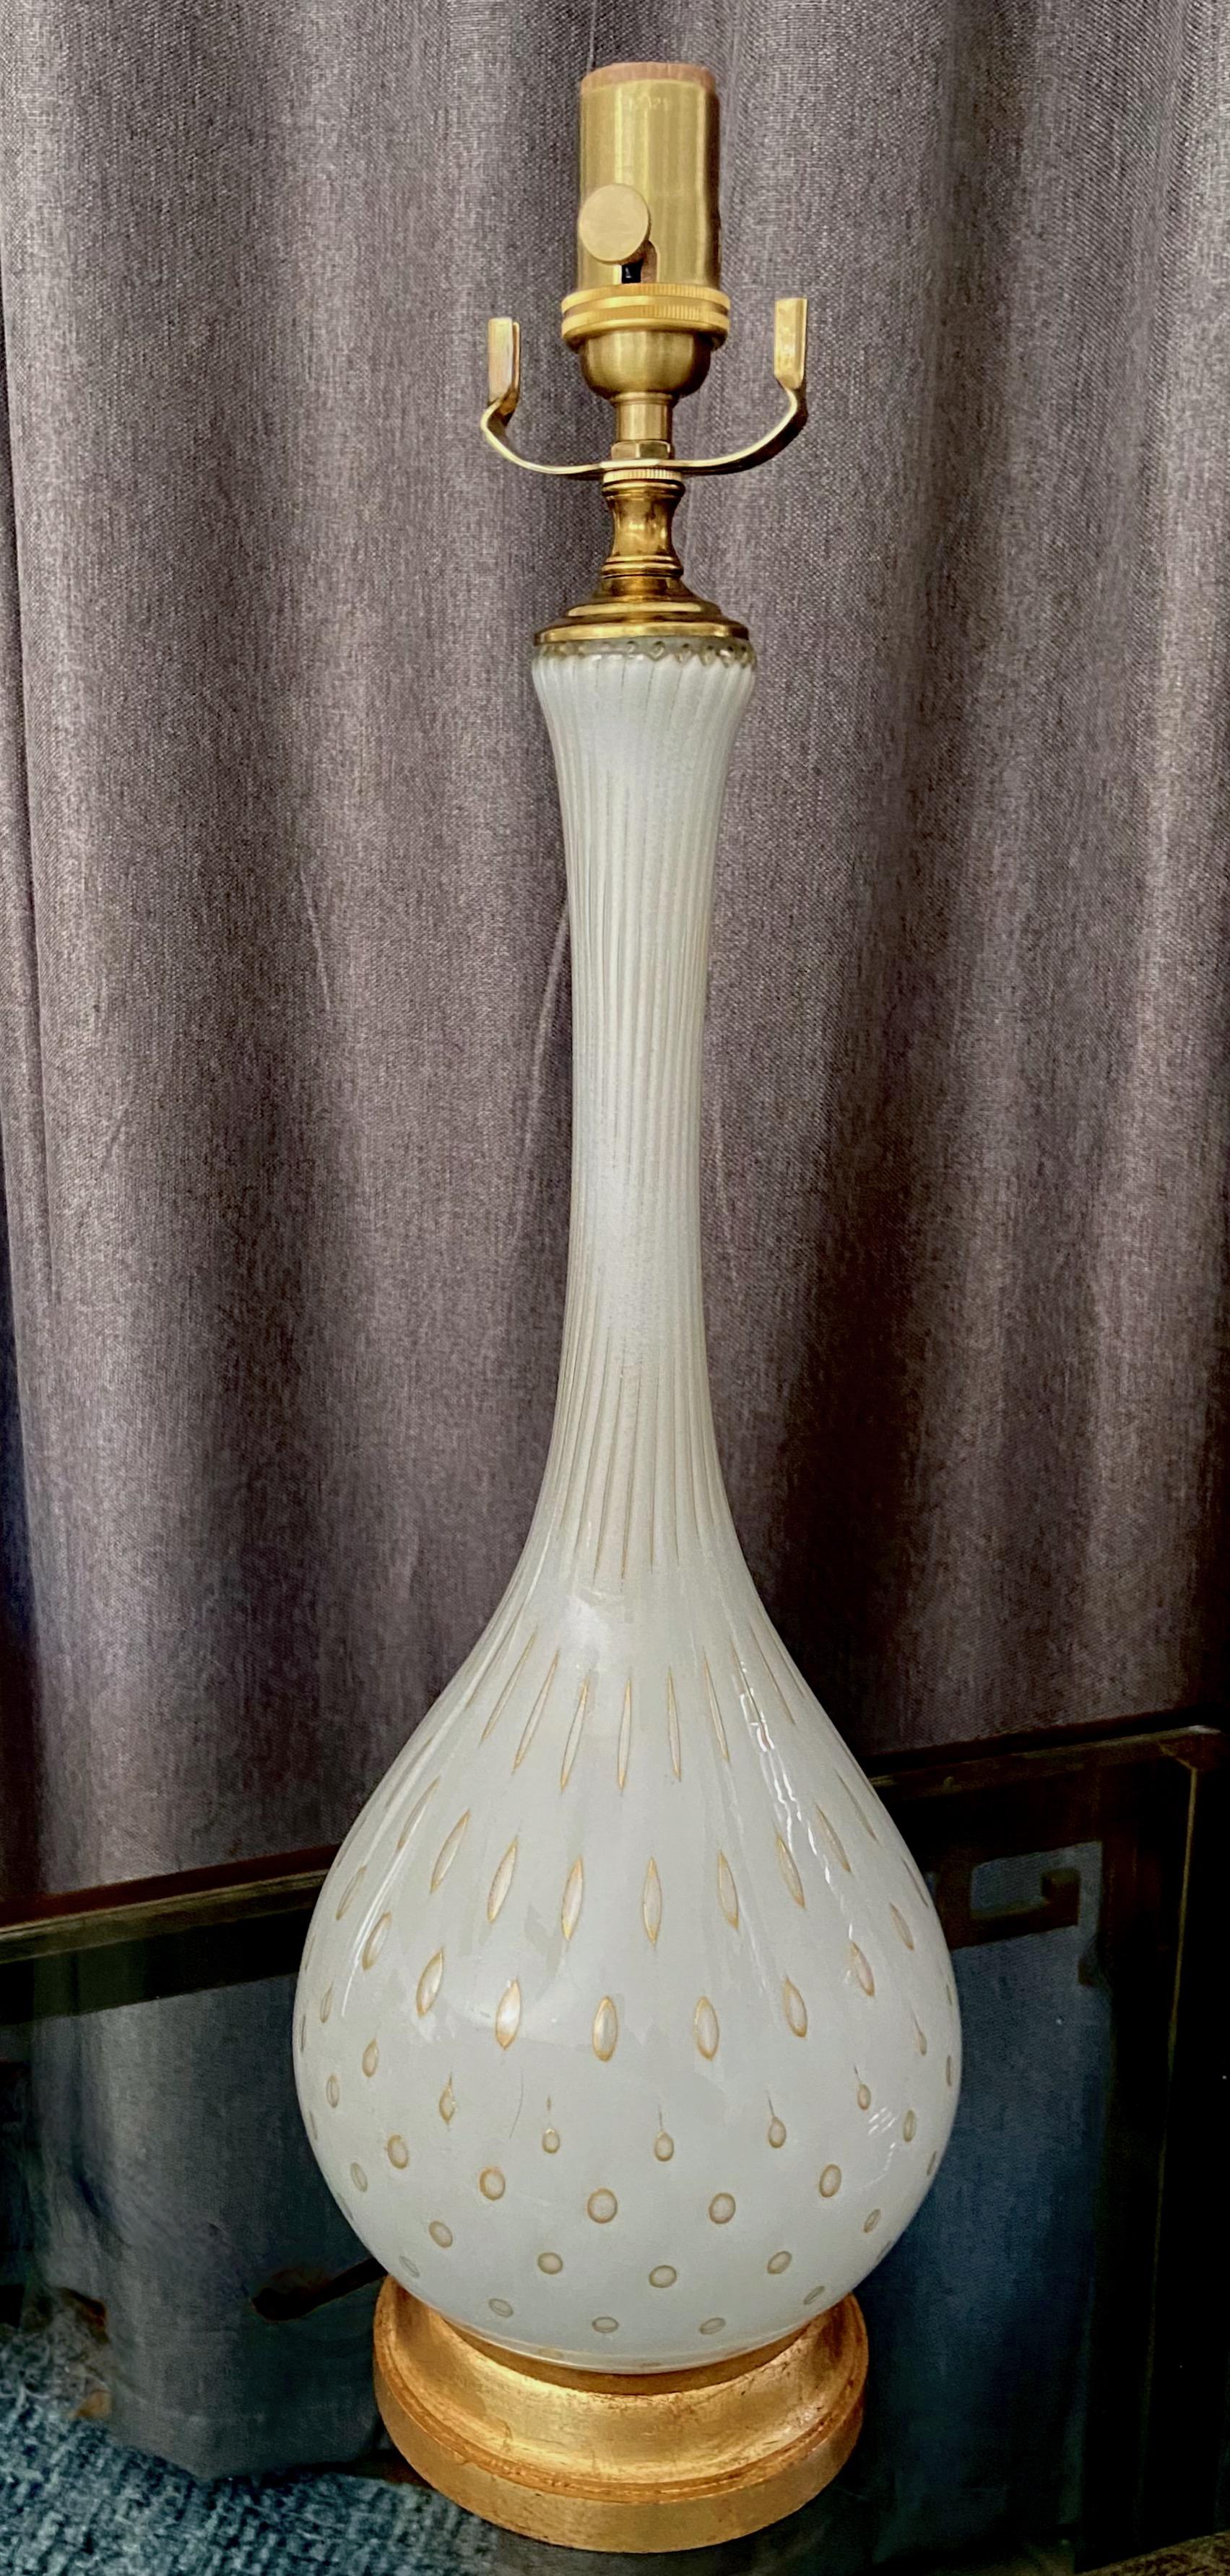 Lampe de table en verre soufflé à la bouche en Italie Murano, blanc et or à bulles contrôlées, par Alfredo Barbini. Les lampes reposent sur une base en bois doré, avec une nouvelle prise en laiton à trois voies et un cordon recouvert de rayonne. Le